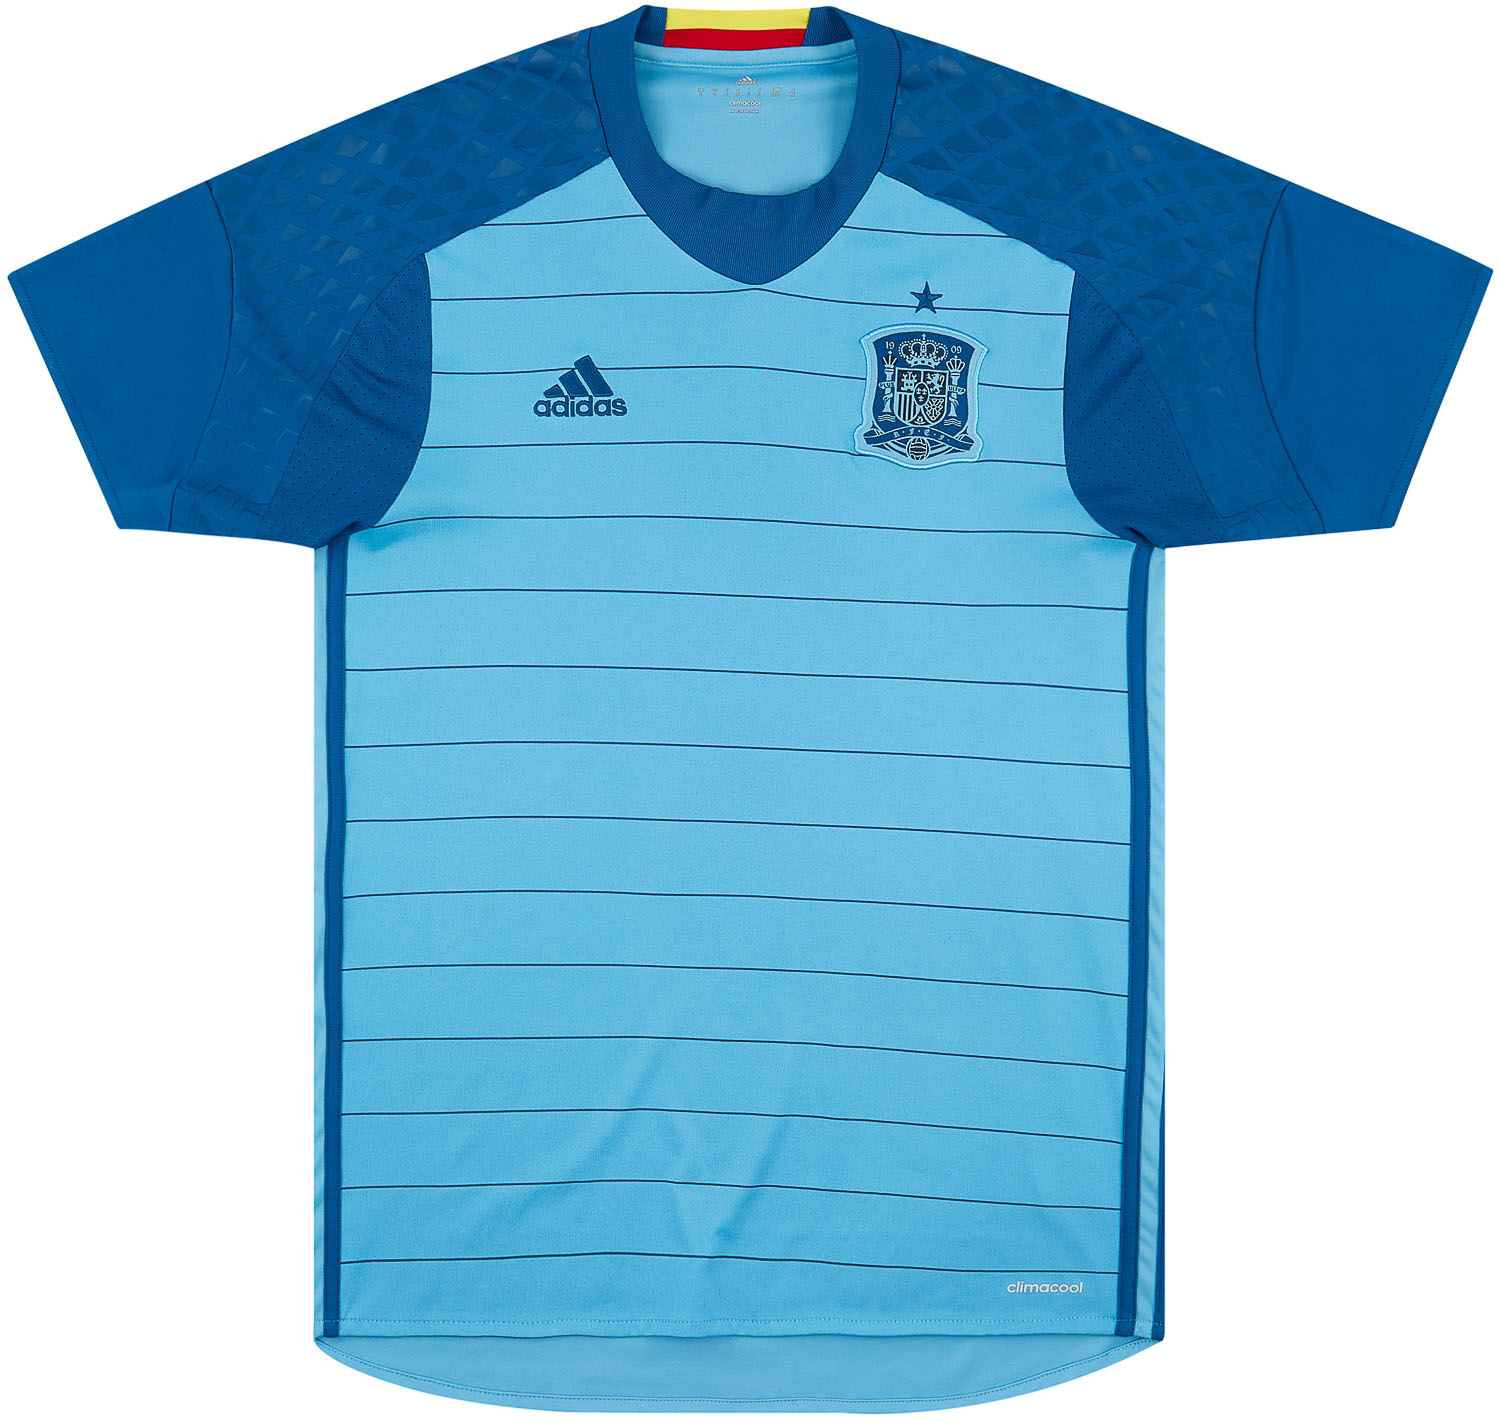 2016-17 Spain GK Shirt - 9/10 - ()